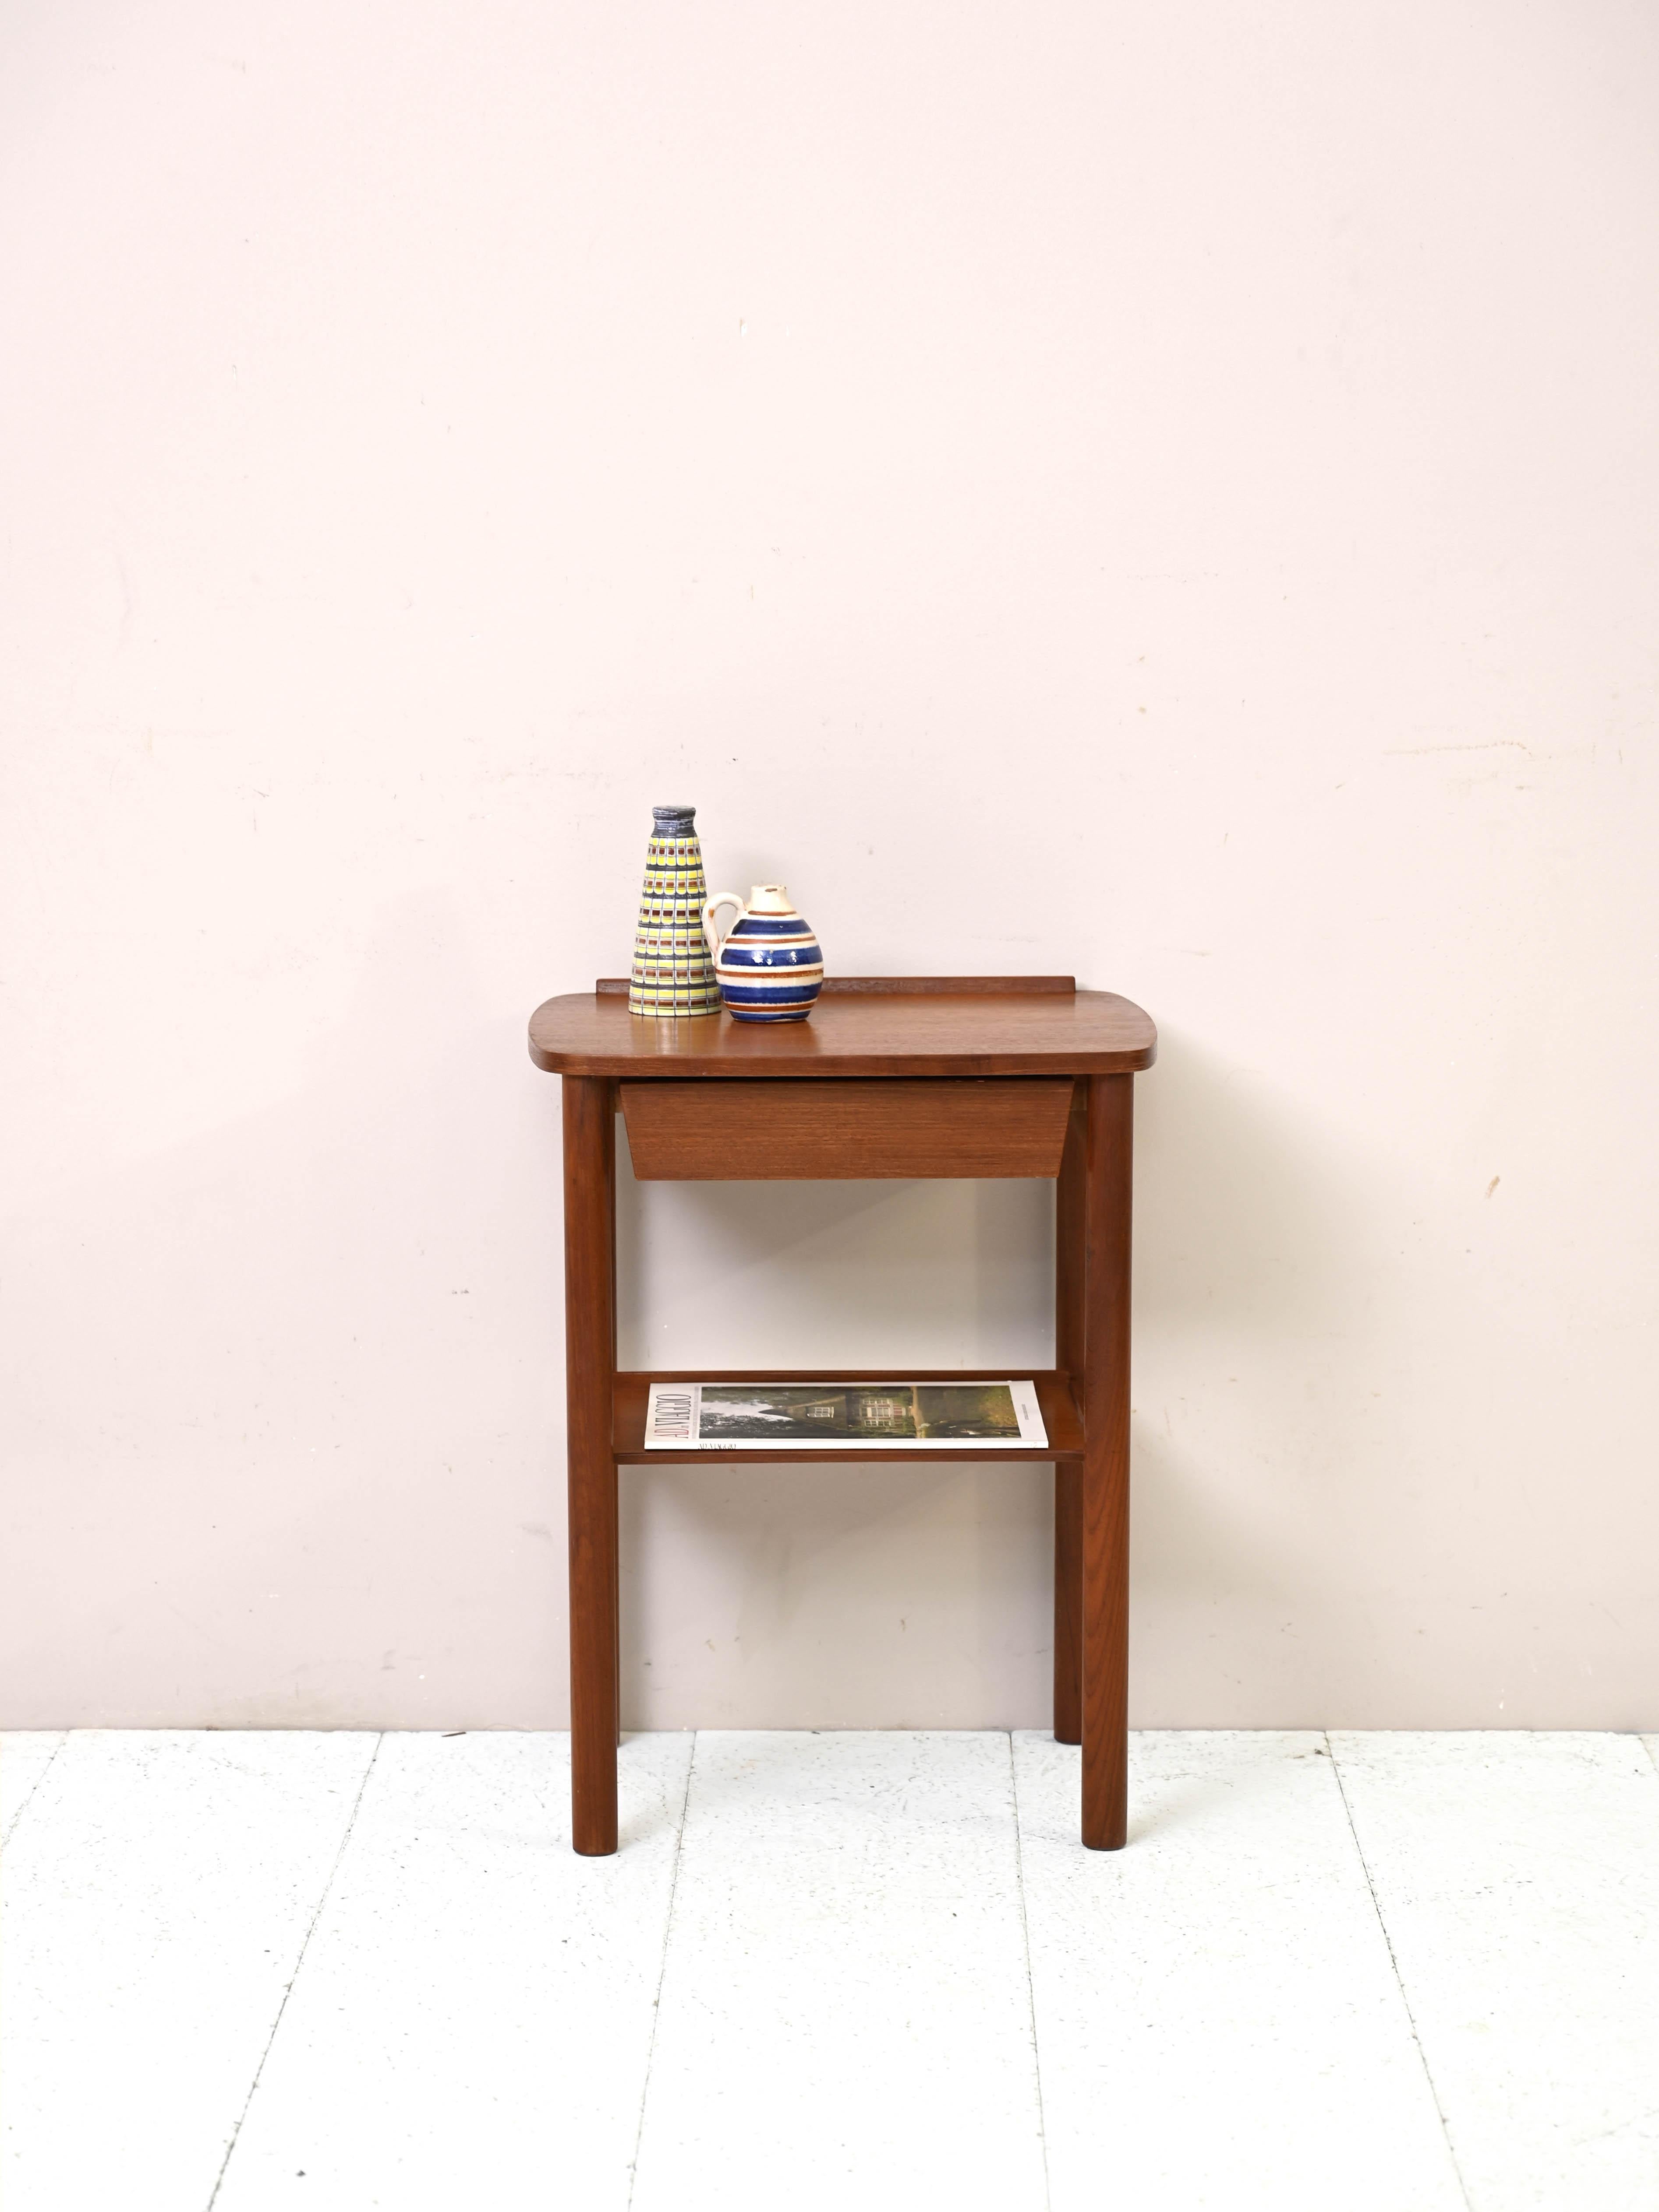 Table d'appoint vintage avec tiroir et porte-revues sur le dessus.

Une petite table de chevet en excellente conservation d'origine.
Il se distingue par sa forme compacte et son sommet en forme de dôme. Un tiroir et un porte-revues sont présents sur